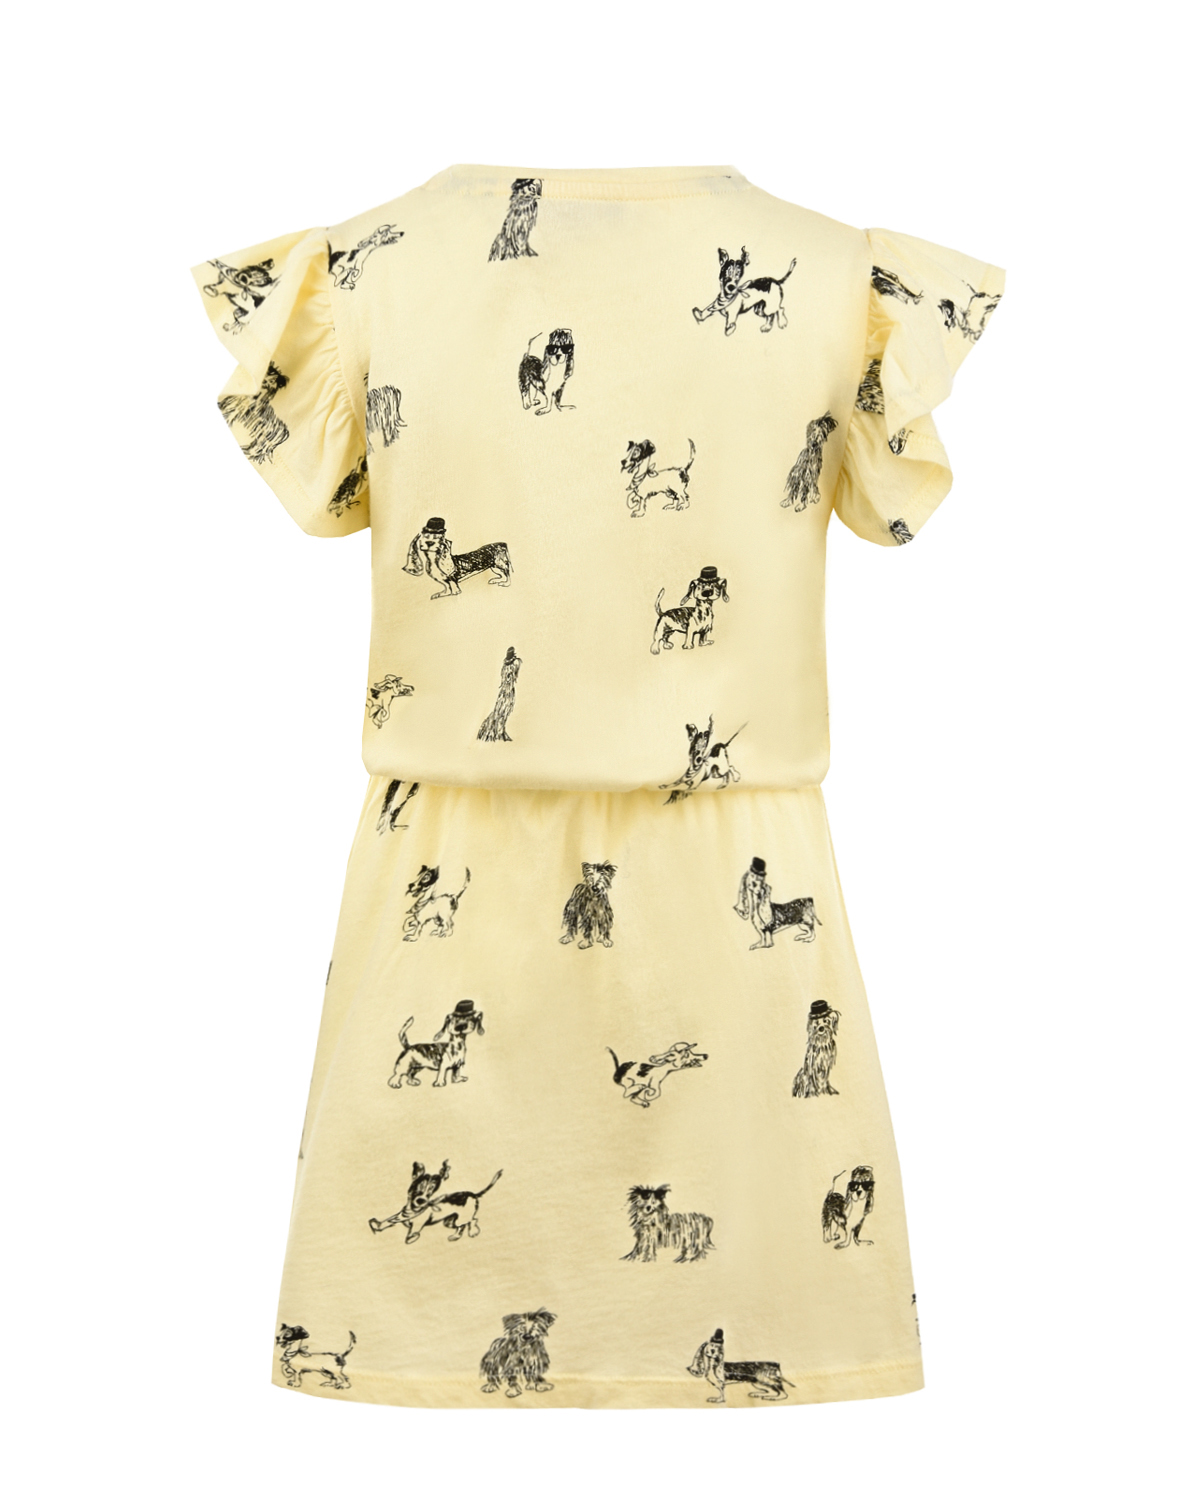 Хлопковое платье с принтом "Собачки" Emile et Ida детское, размер 92, цвет желтый - фото 2